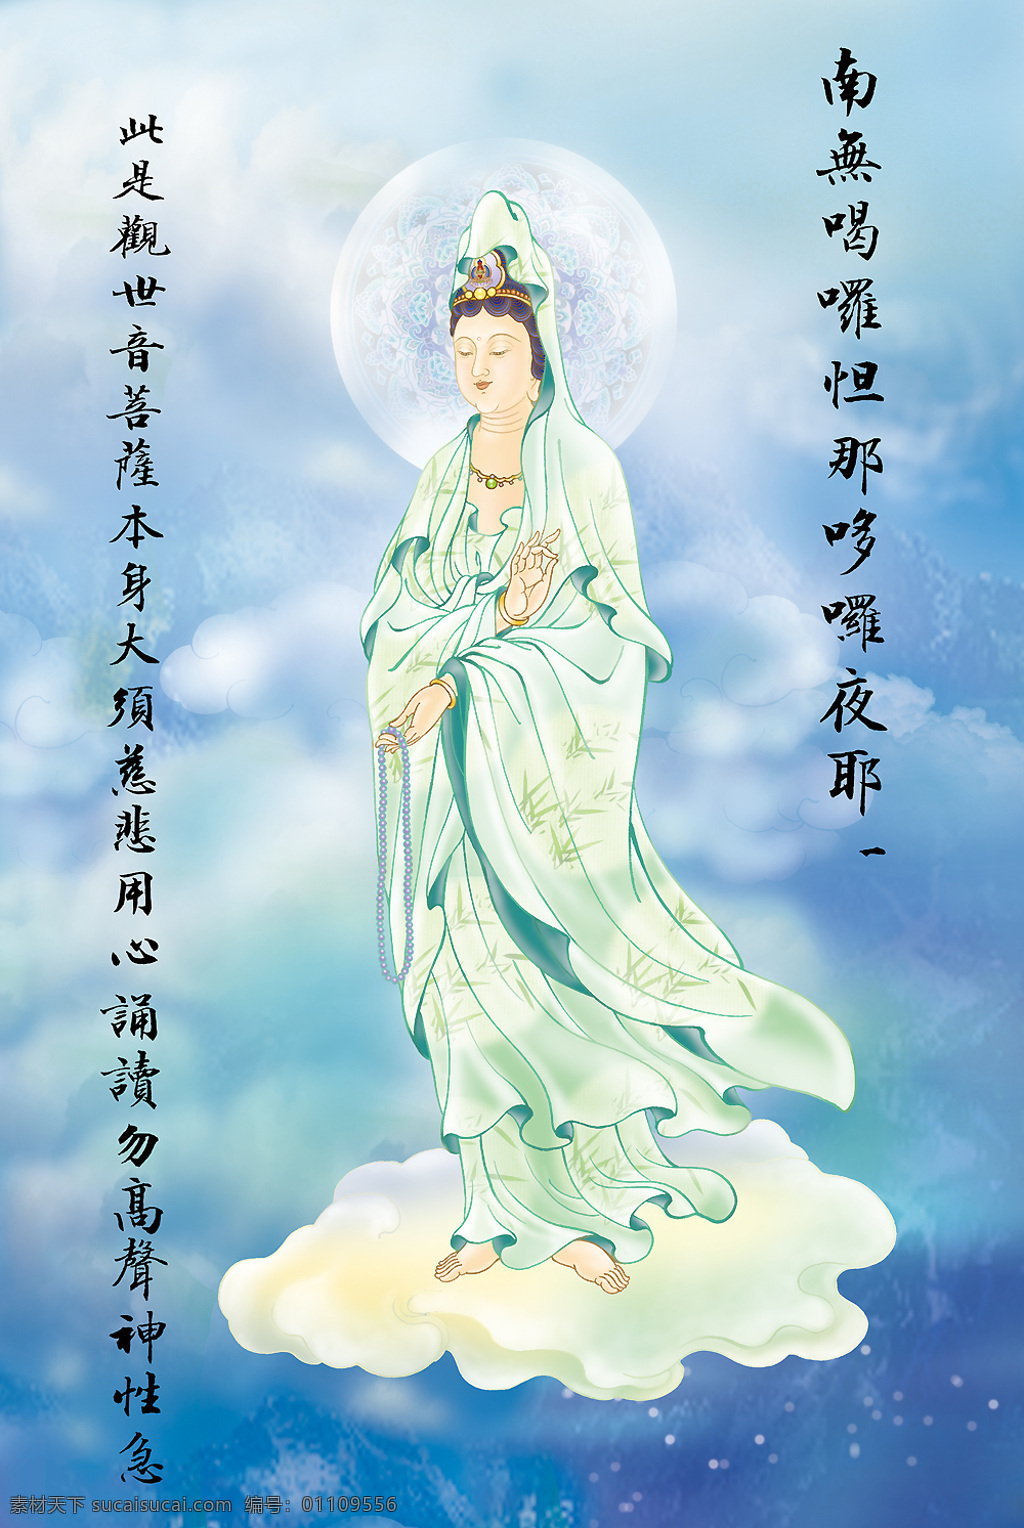 大悲出相图1 佛教 依林法师画 林隆达居士书 台湾 文化艺术 宗教信仰 设计图库